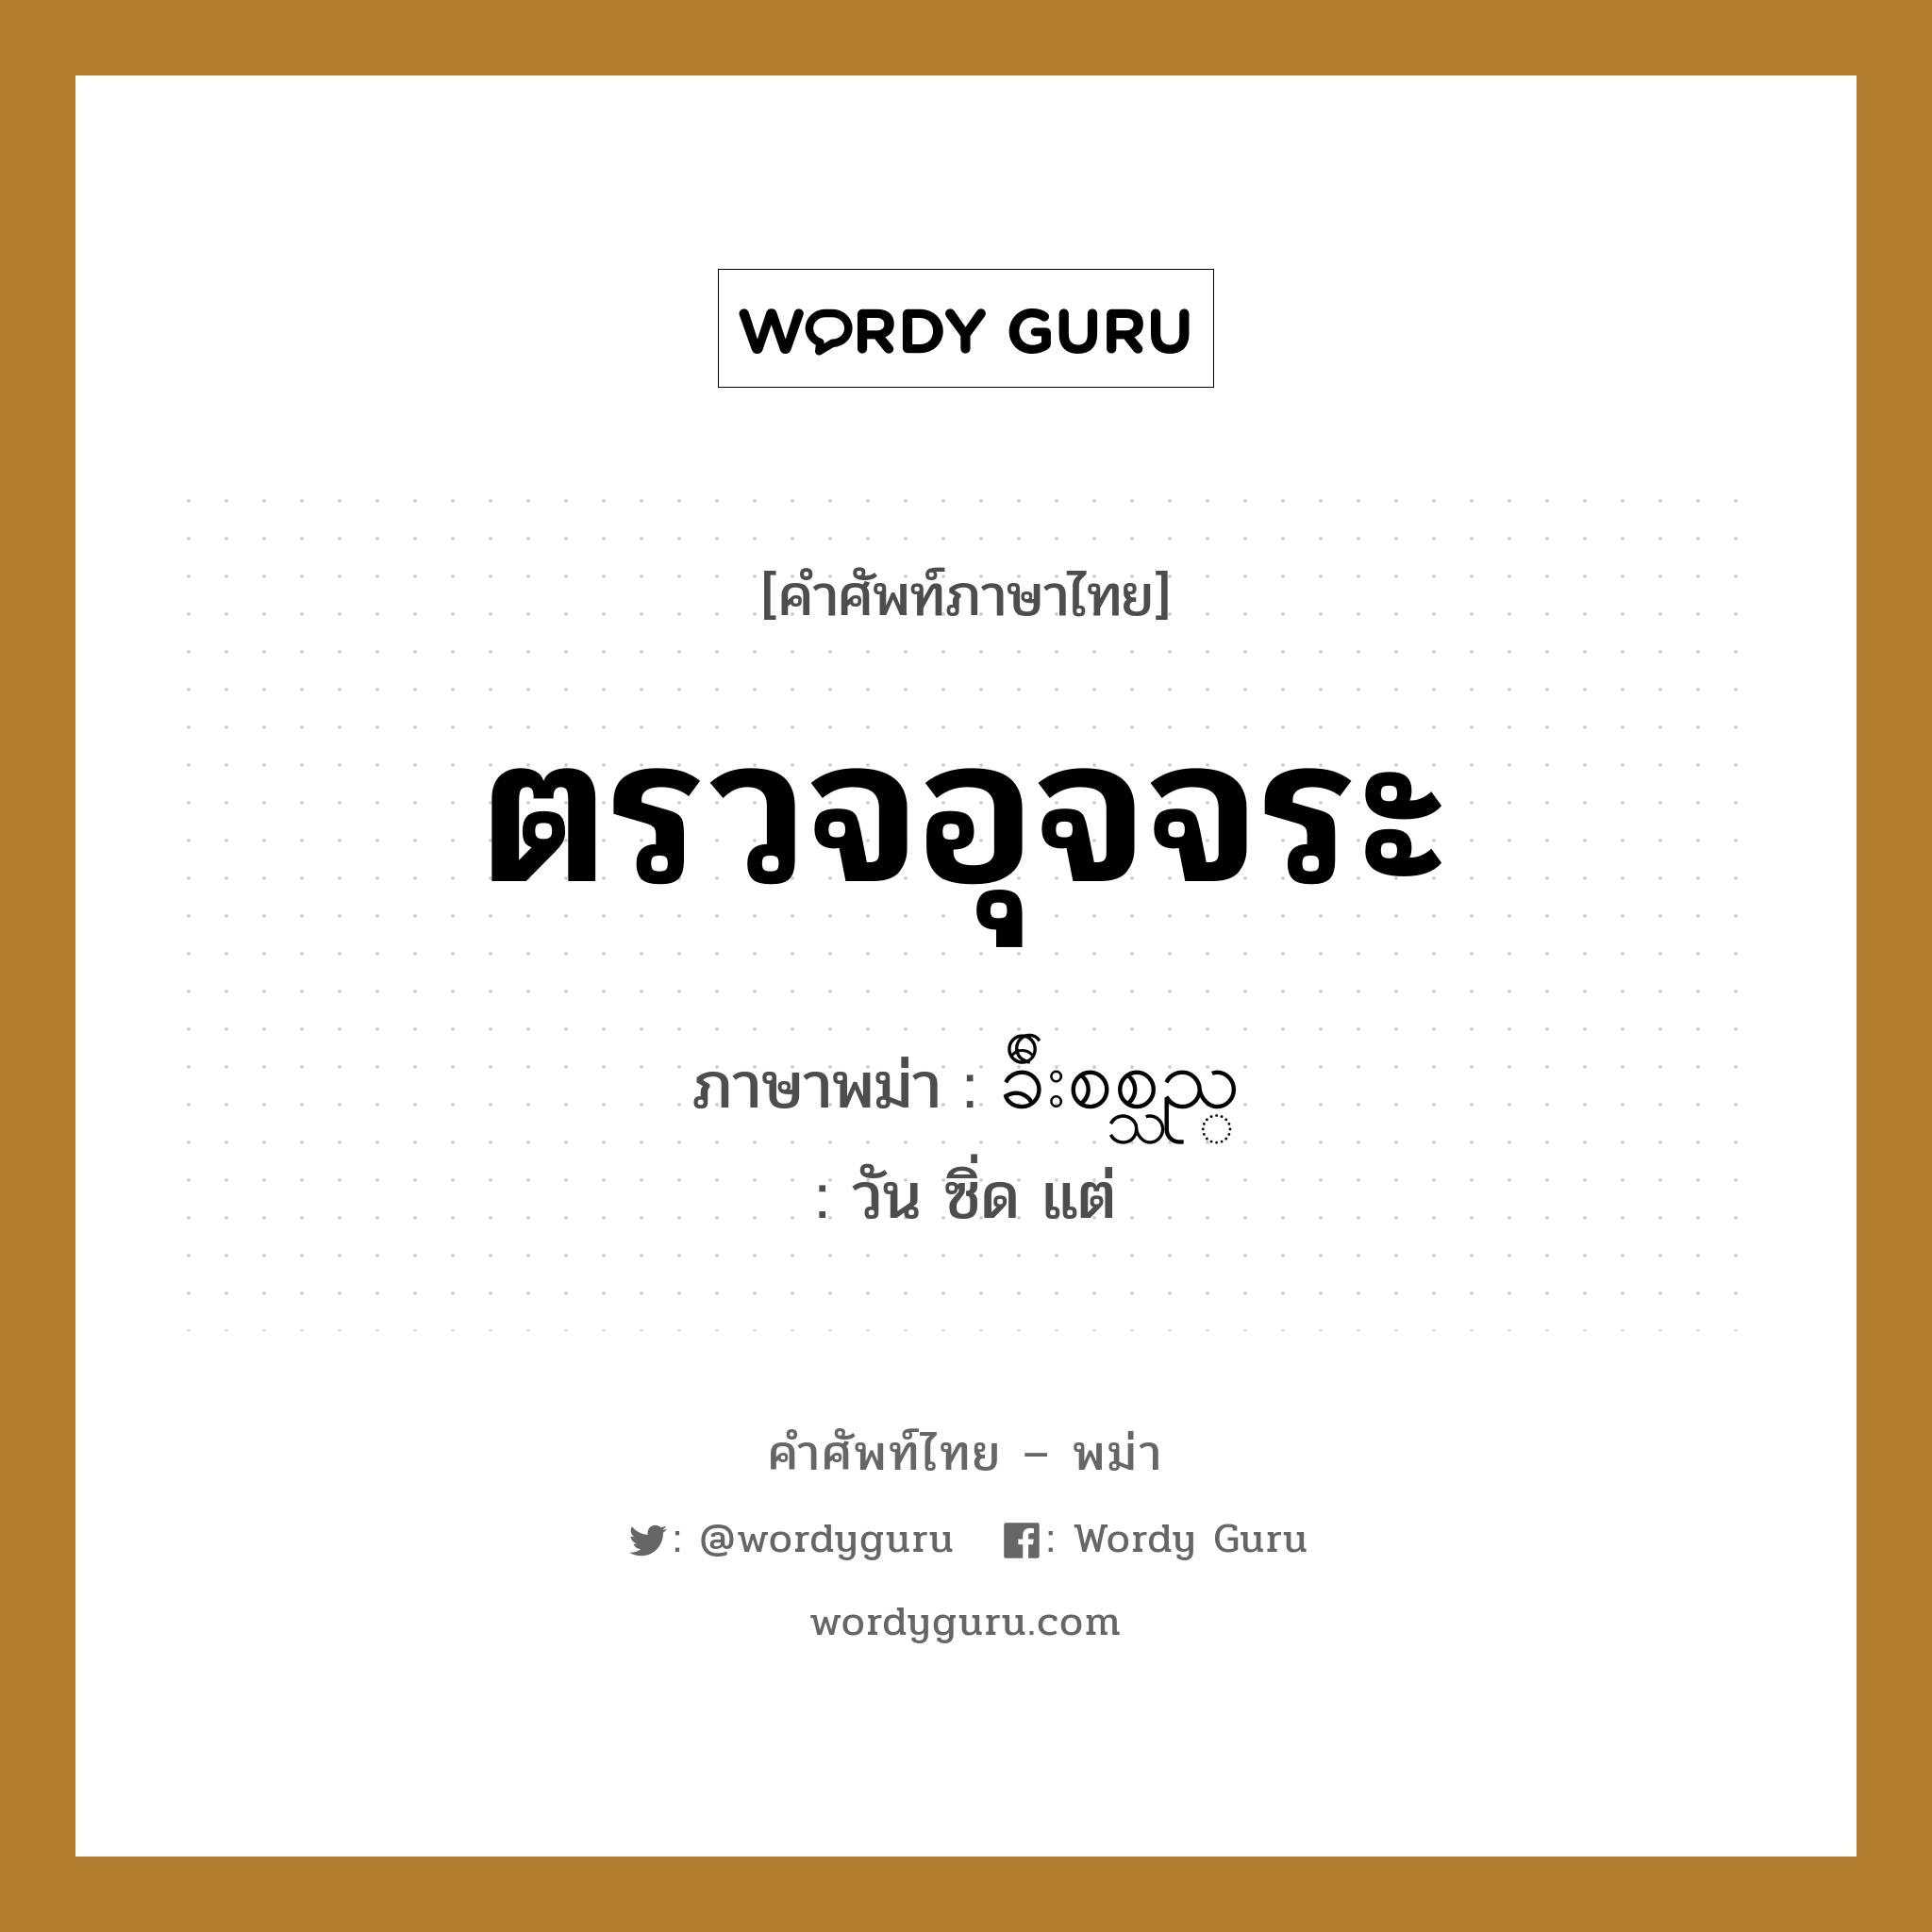 ตรวจอุจจระ ภาษาพม่าคืออะไร, คำศัพท์ภาษาไทย - พม่า ตรวจอุจจระ ภาษาพม่า ခ်ီးစစ္သည္ หมวด หมวดโรคและยารักษา วัน ซิ่ด แต่ หมวด หมวดโรคและยารักษา